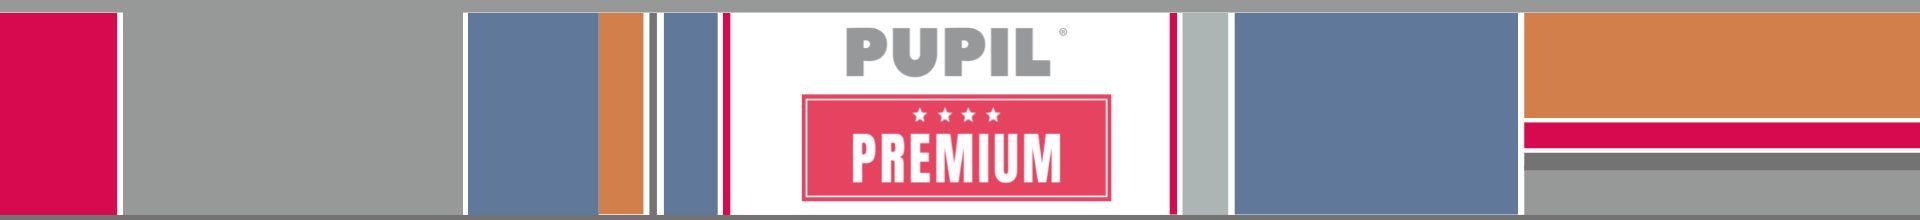 PUPIL Premium